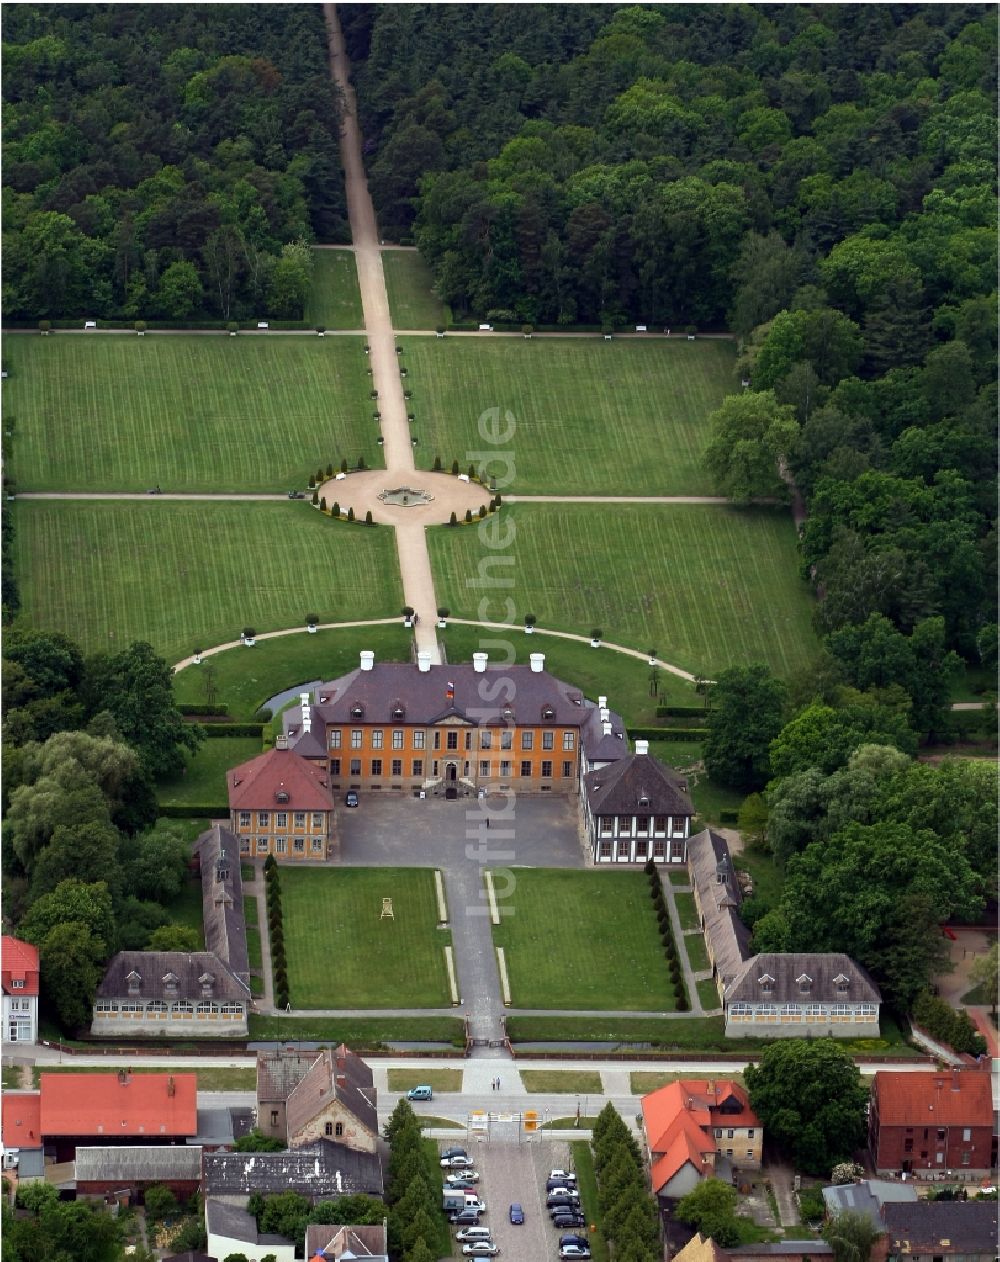 Luftbild Oranienbaum - Schloßparkanlage am Schloss Oranienbaum in Oranienbaum-Wörlitz im Bundesland Sachsen-Anhalt